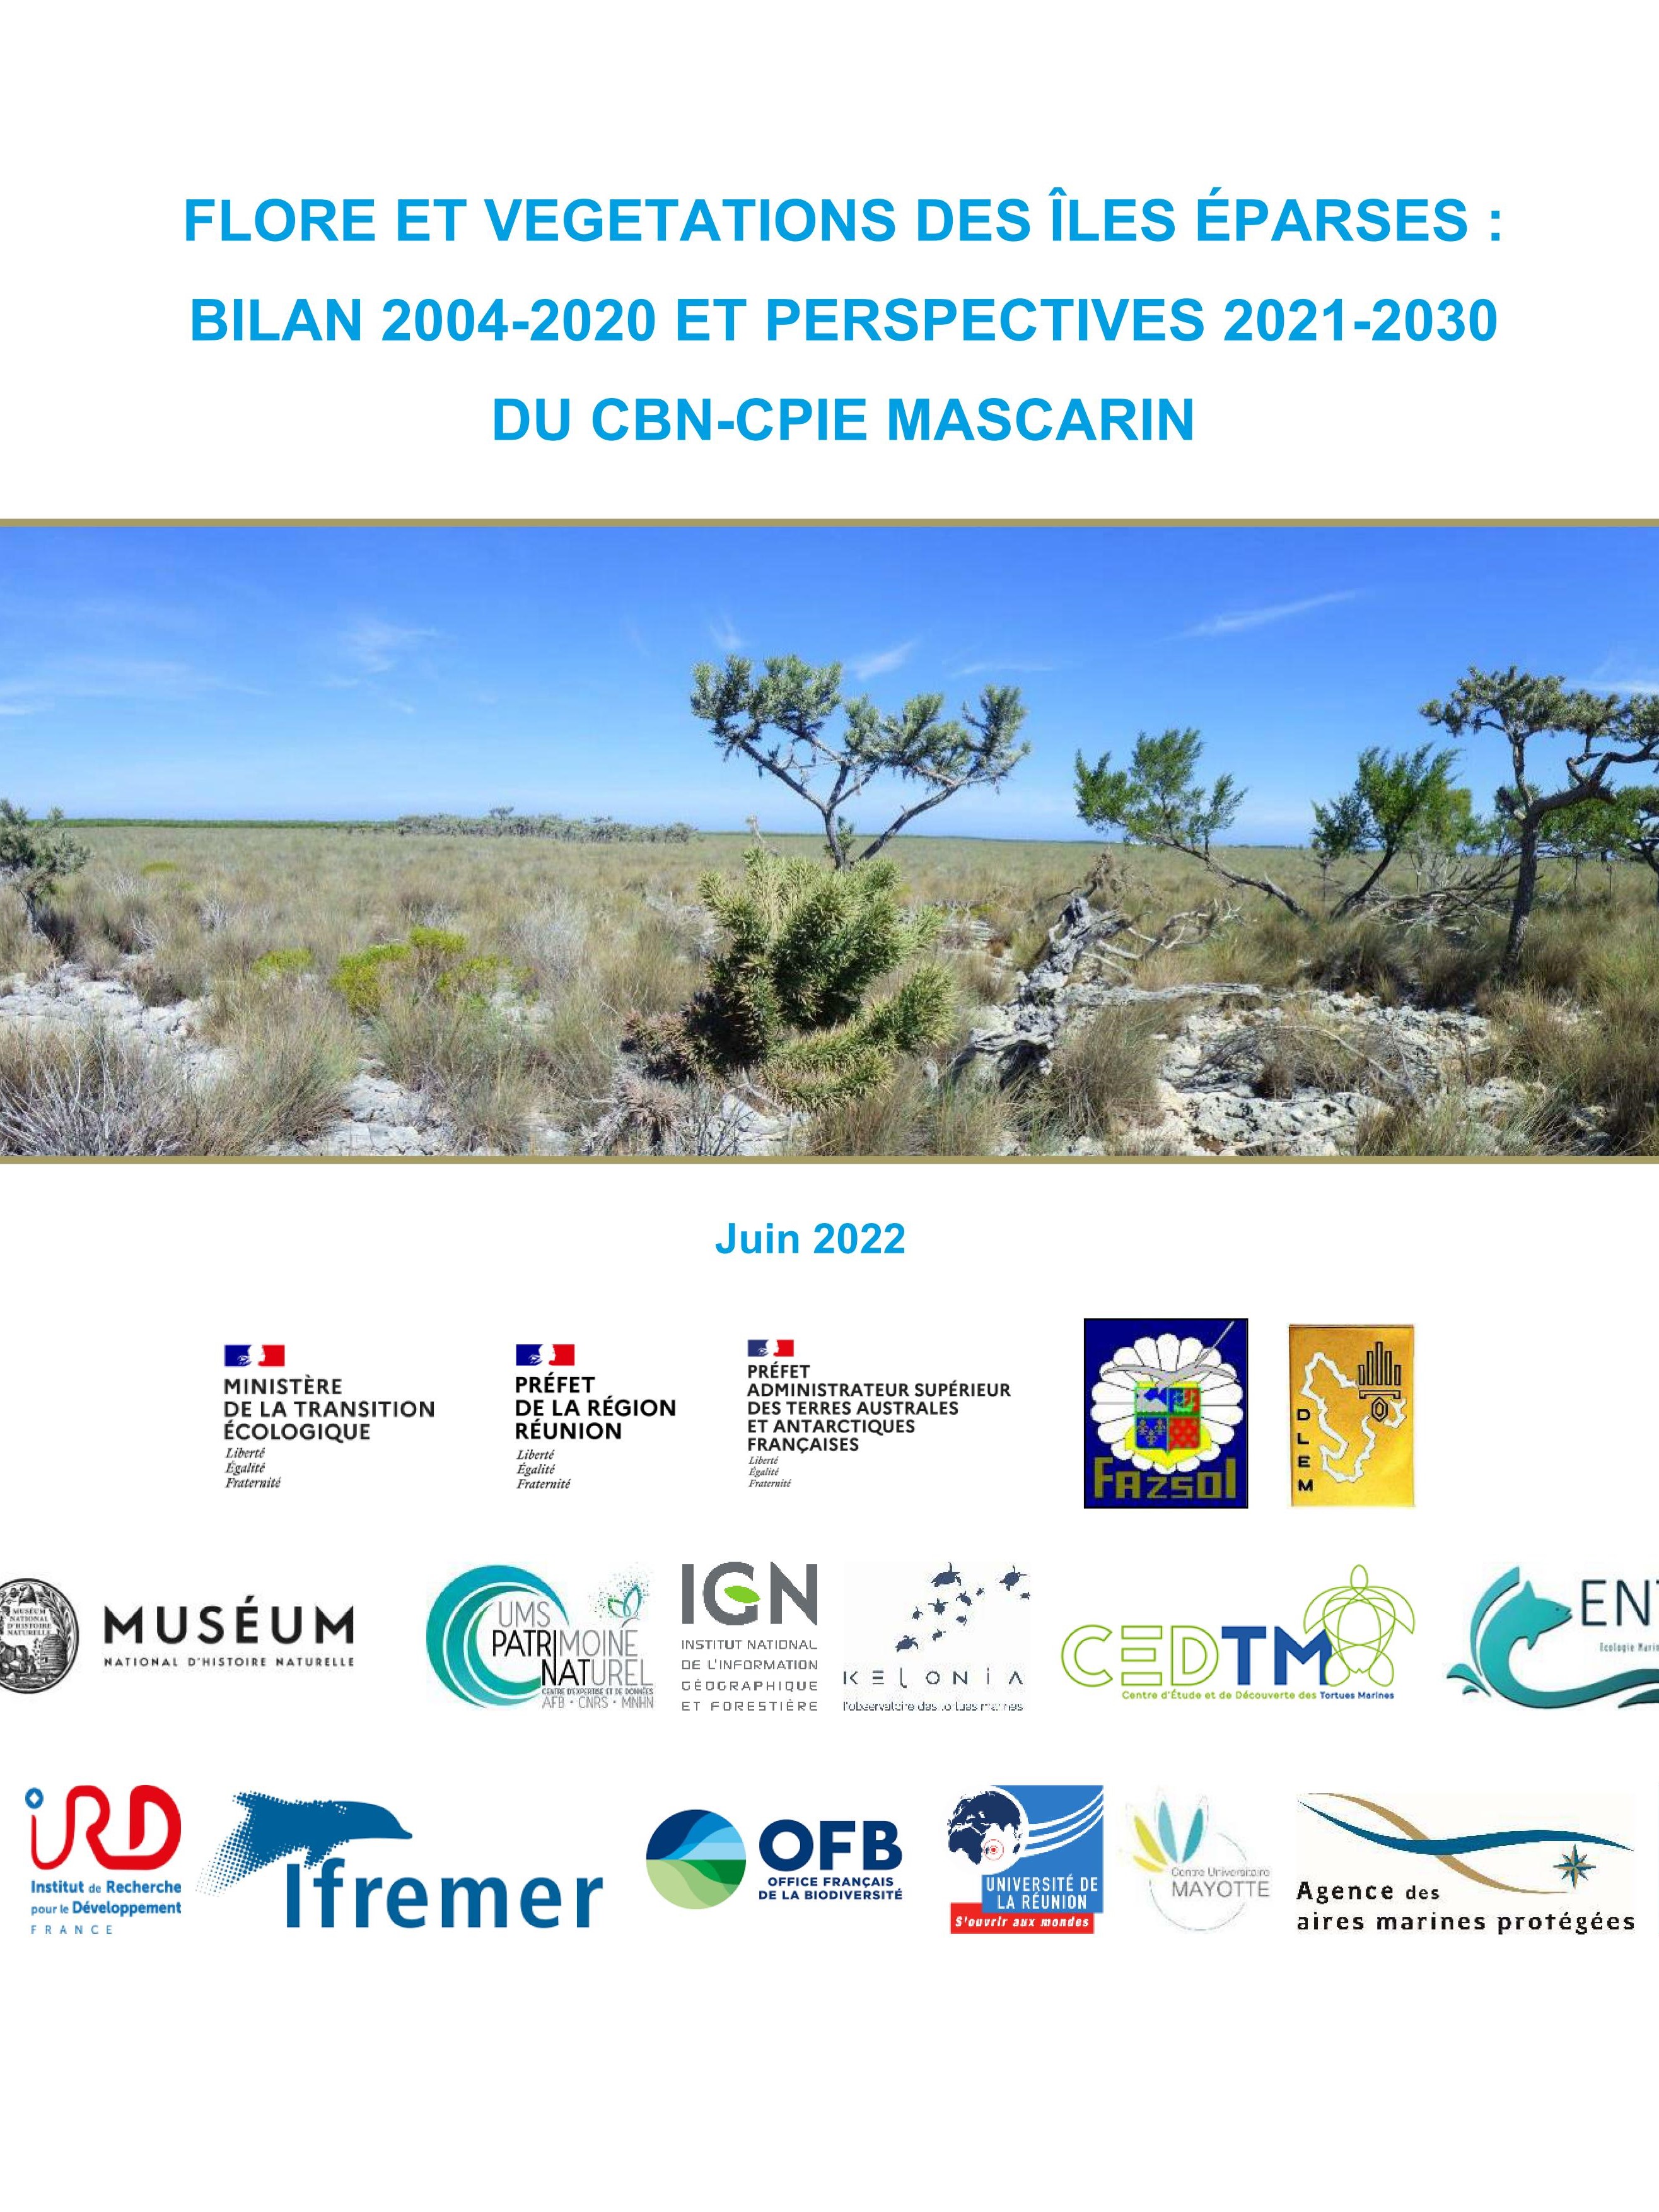 Flore et végétations des îles Éparses : bilan 2004-2020 et perspectives 2021-2030